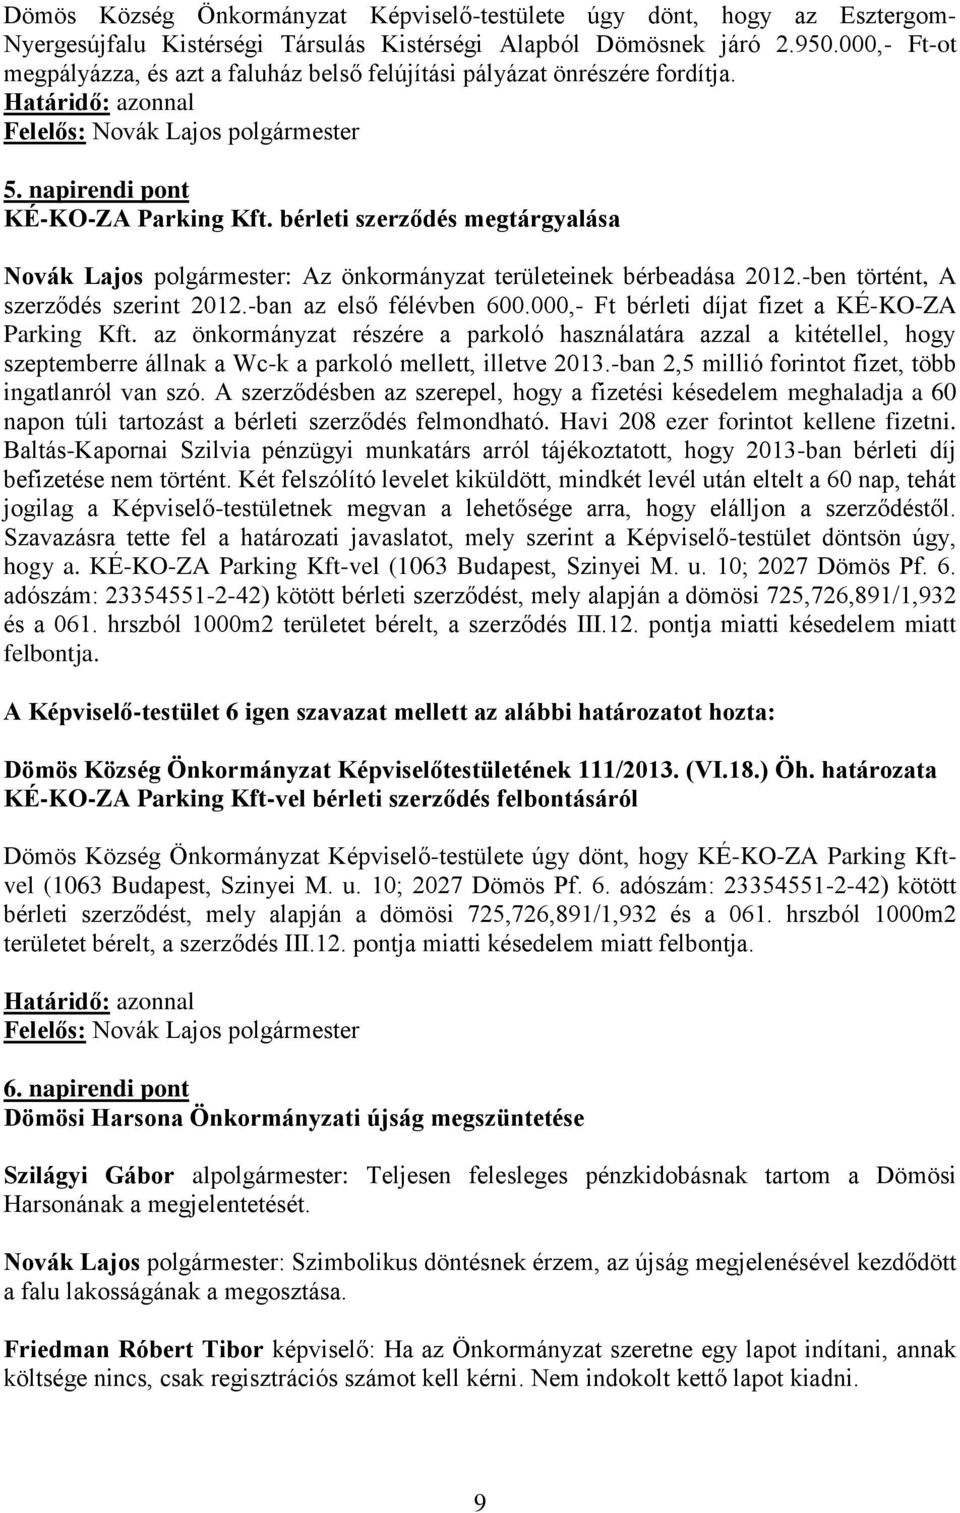 bérleti szerződés megtárgyalása Novák Lajos polgármester: Az önkormányzat területeinek bérbeadása 2012.-ben történt, A szerződés szerint 2012.-ban az első félévben 600.